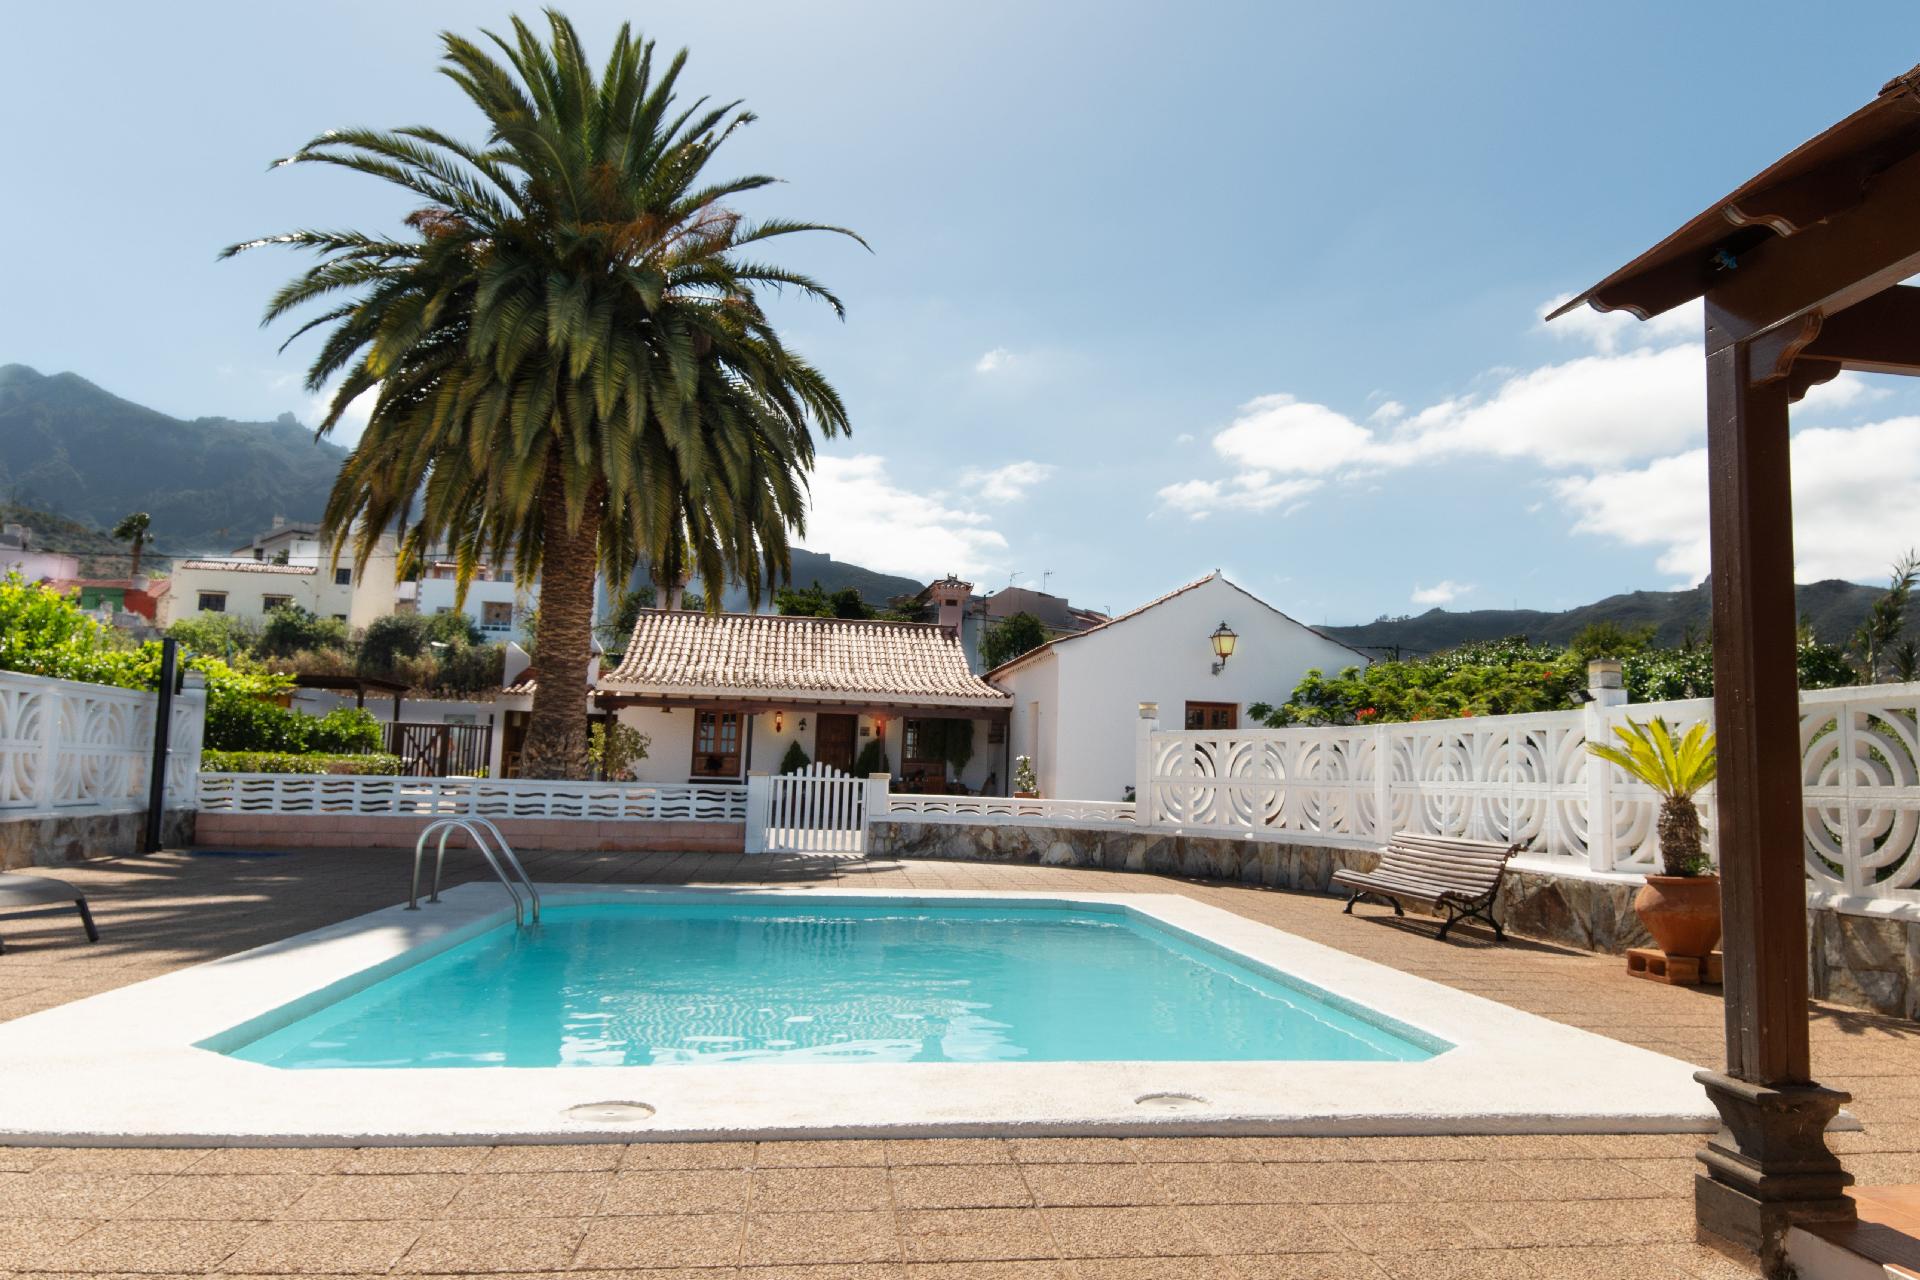 Typisch kanarische Finca mit eigenem Pool im Garte Ferienhaus in Spanien